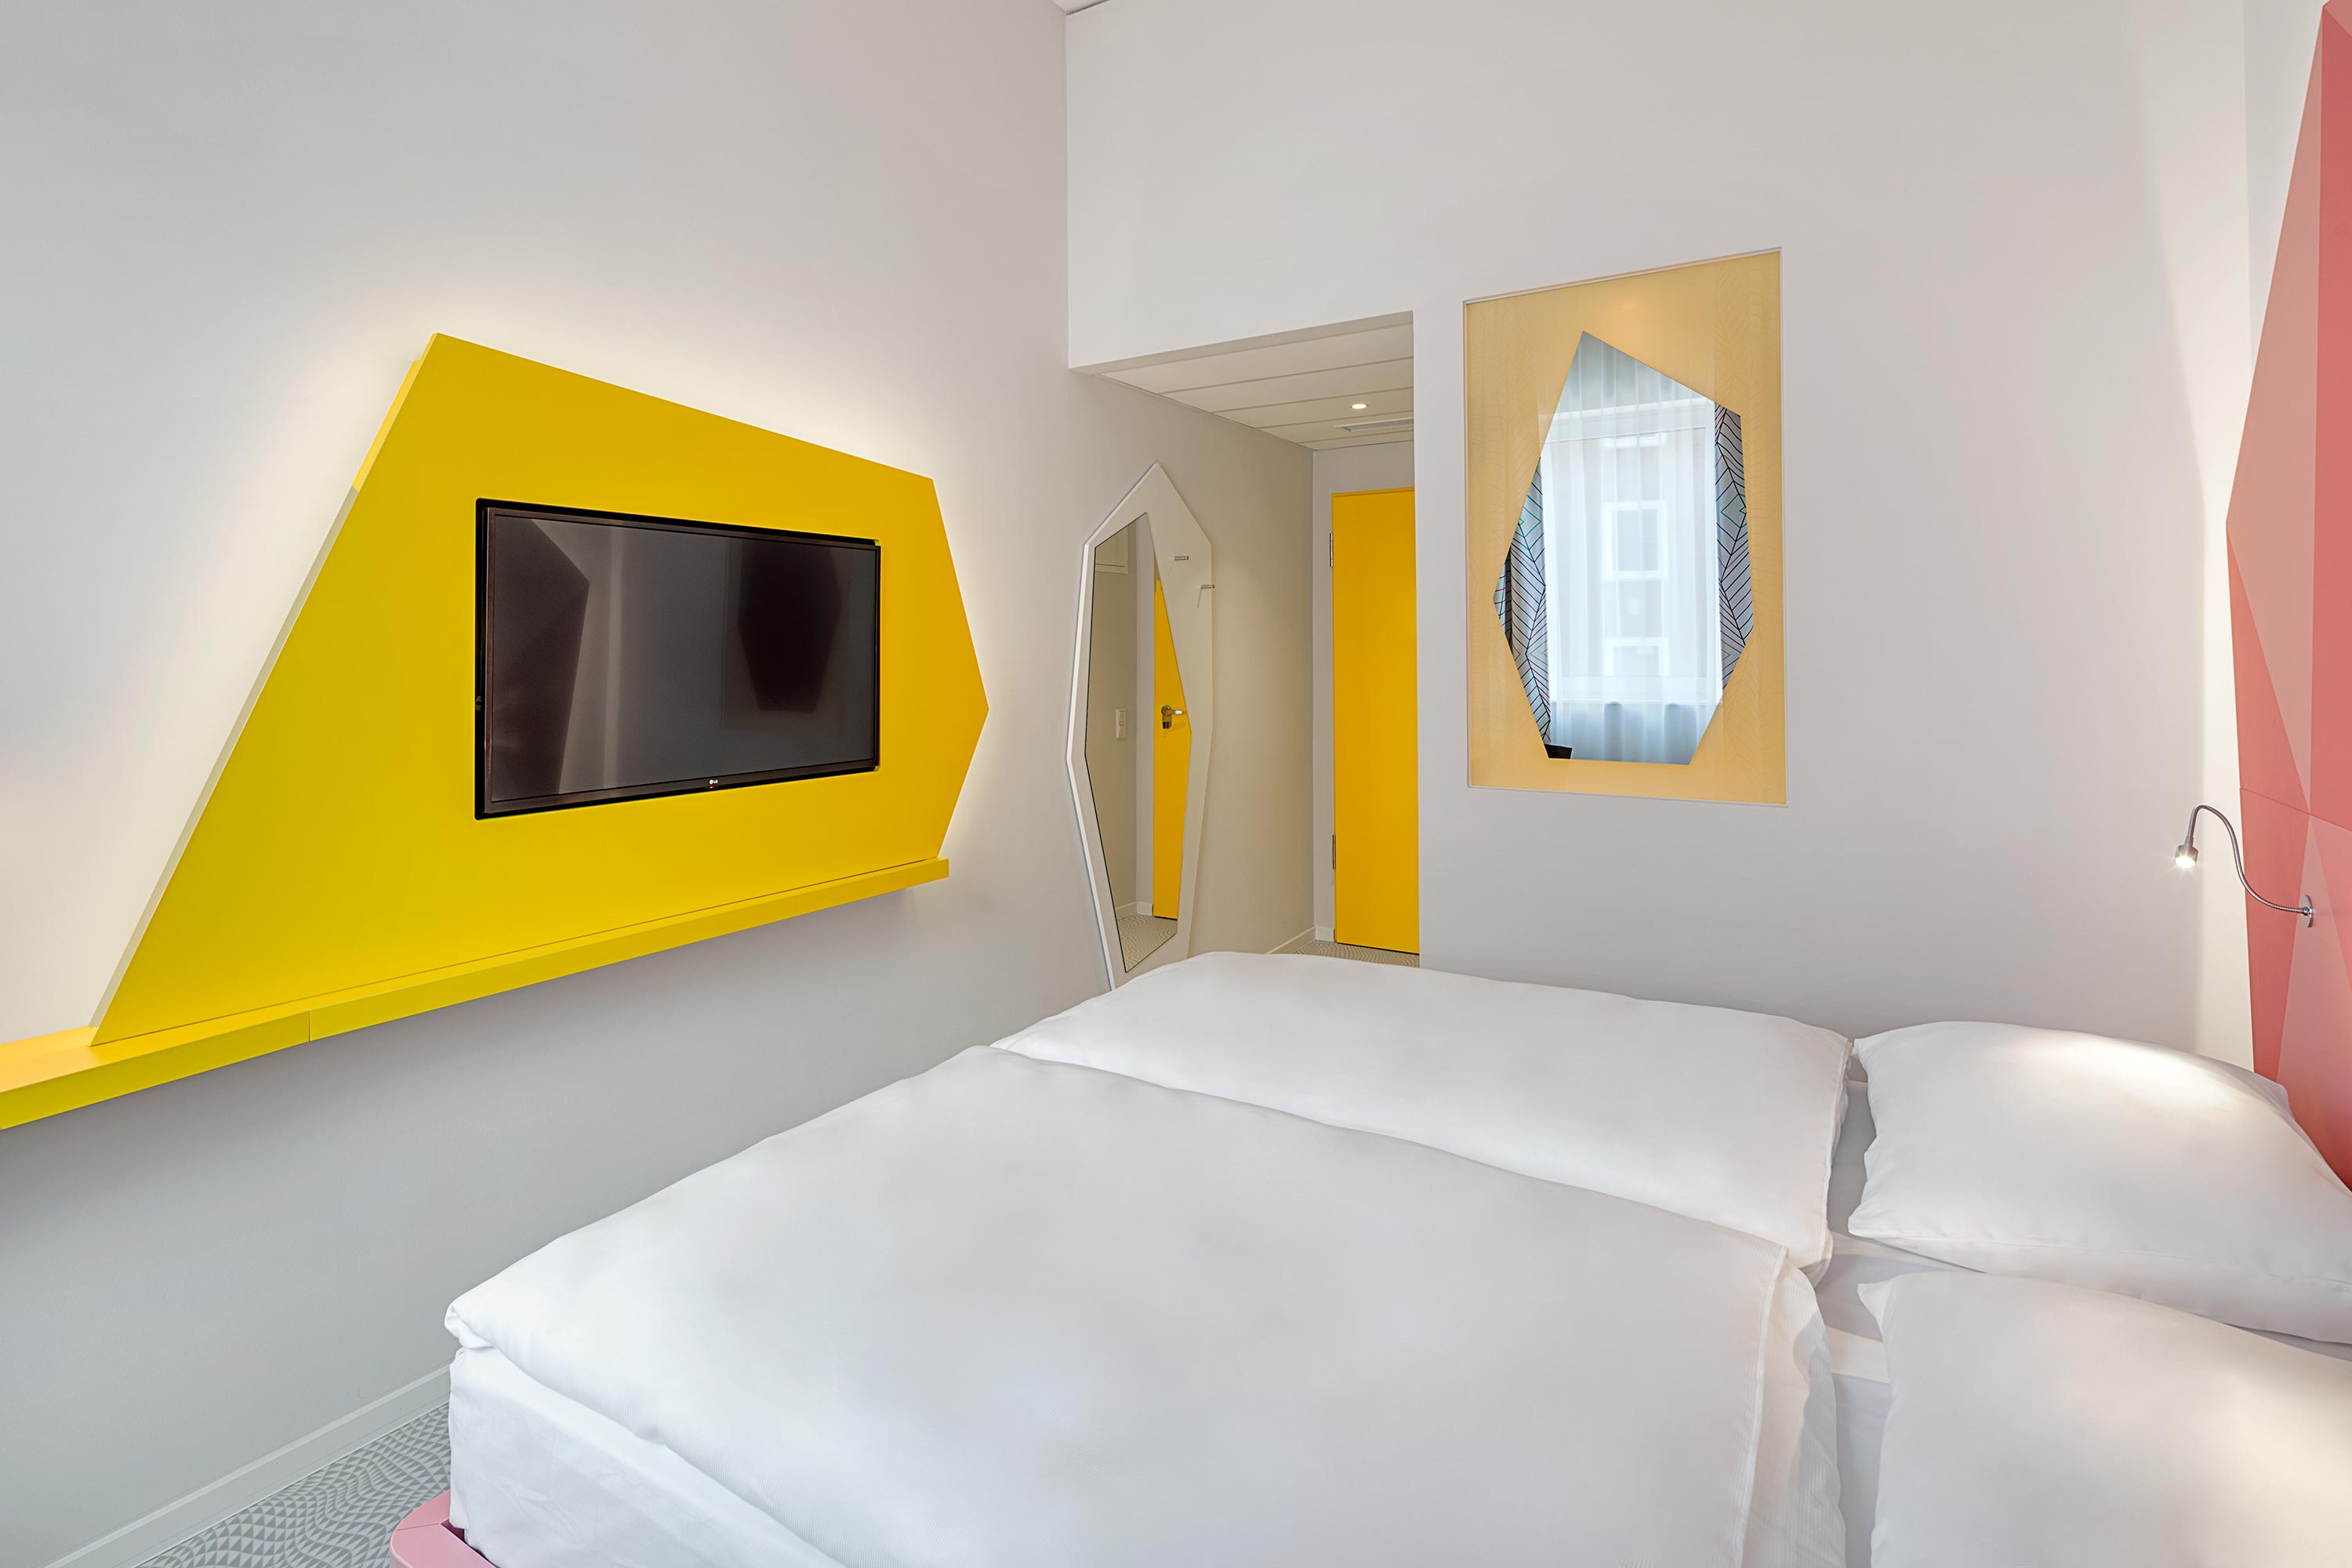 Ein frisch bezogenes Bett vor einem Flachbildfernseher, der an einer gelben Wand hängt